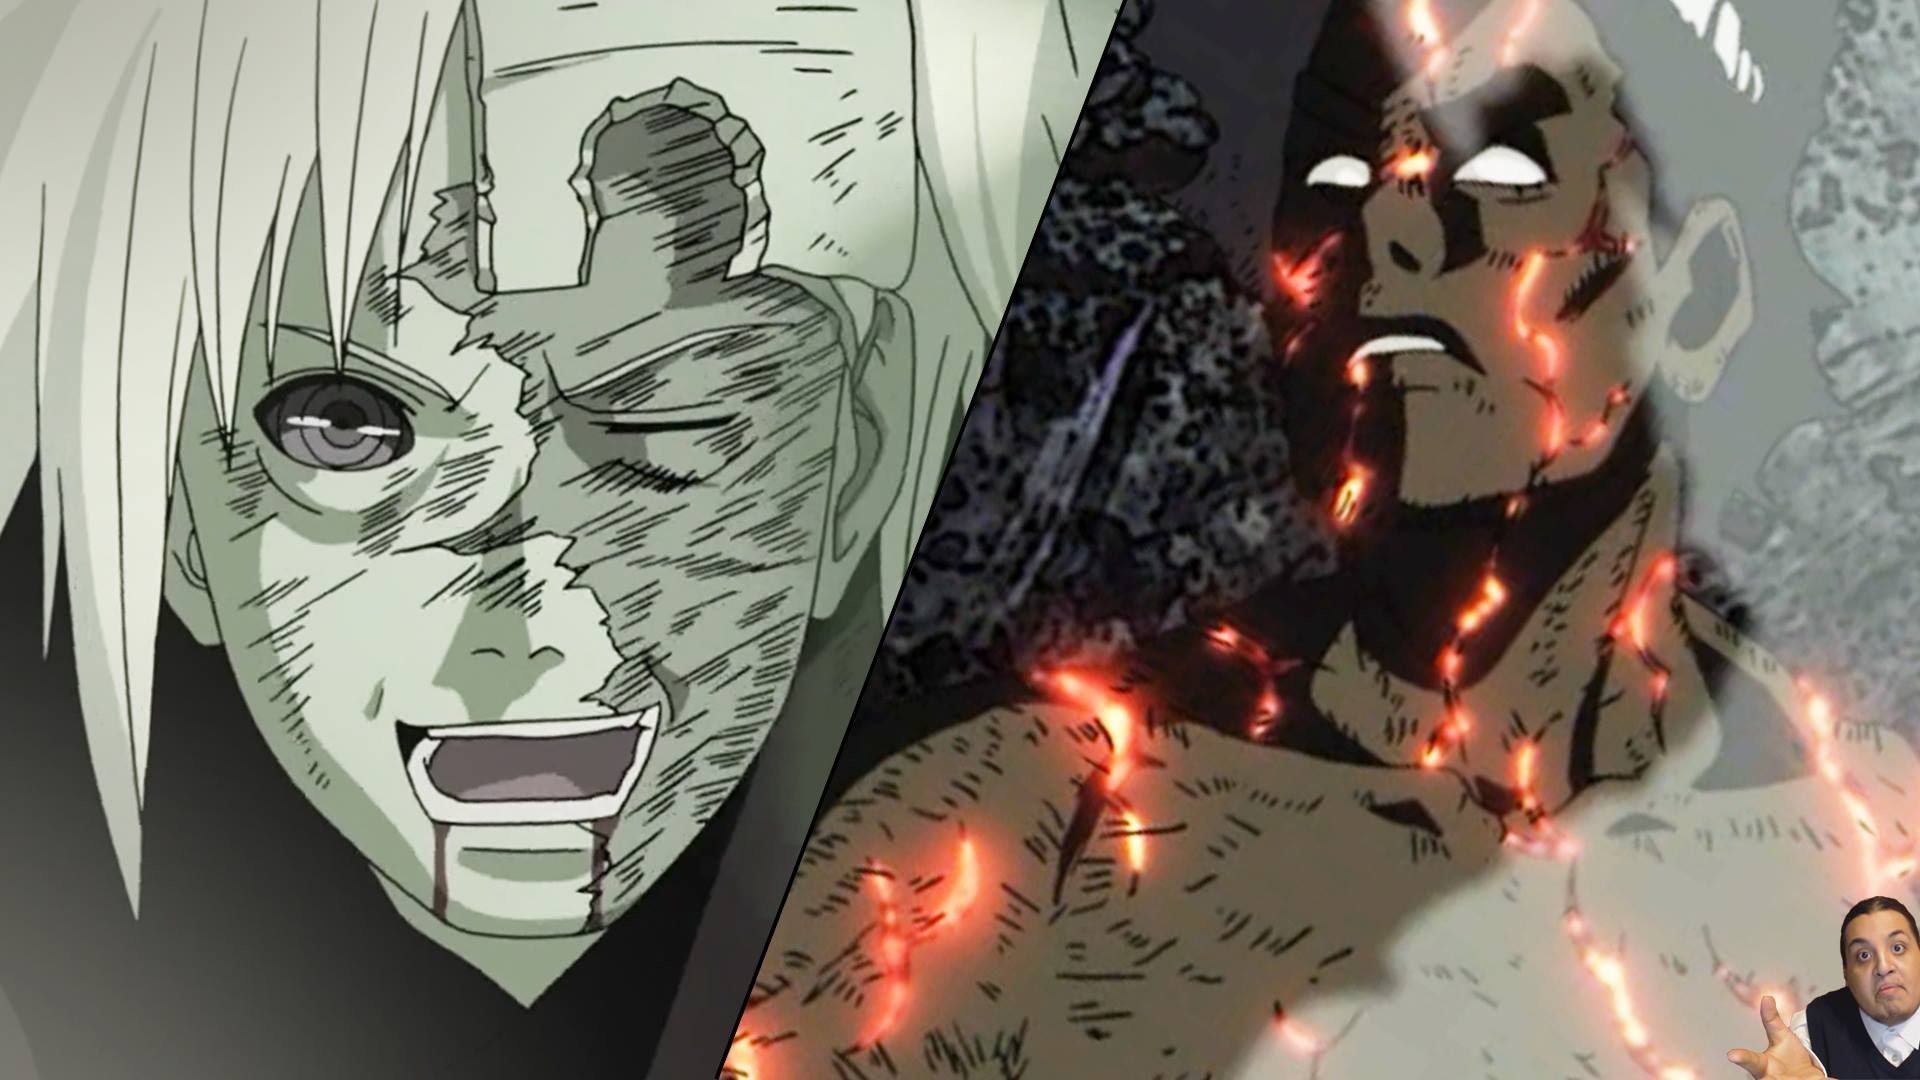 1920x1080 Naruto Shippuden Episode 421 -ãã«ã- ç¾é¢¨ä¼ Anime Review/Reaction -- Might Guy's  "Death" Vs Madara Finale - YouTube